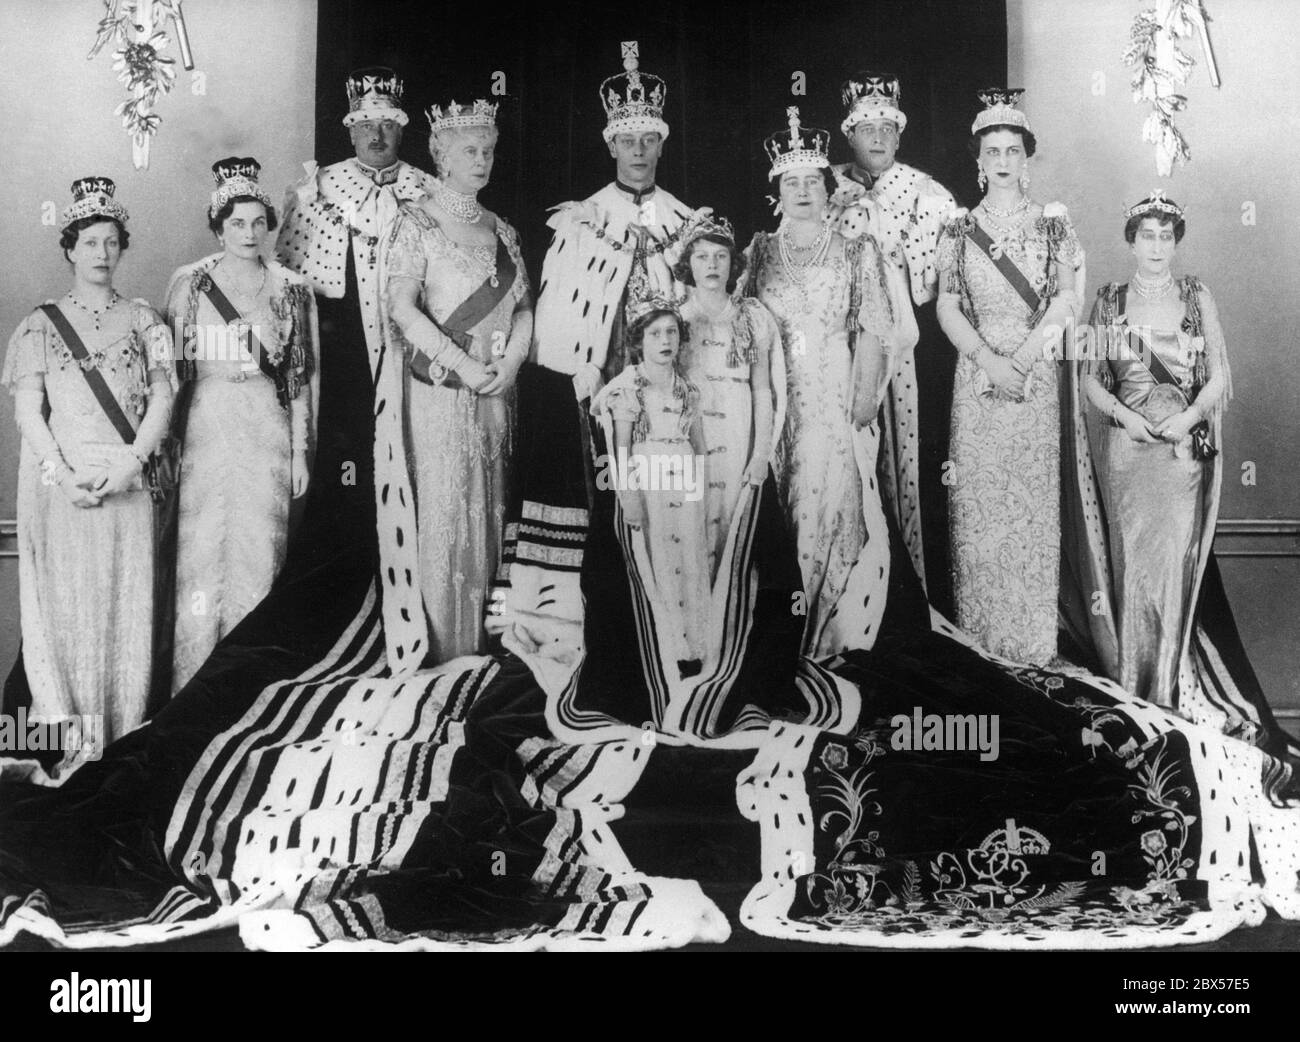 De izquierda a derecha: Mary, Princess Royal, Alice, Duquesa de Gloucester y su esposo Henry, Duke of Gloucester, Queen Mary, King George VI, Princess Margaret Rose, Princess Elizabeth, Queen Elizabeth, George, el Duque de Kent, y su esposa Marina, Duquesa de Kent y Reina Maud de Noruega. Foto de stock